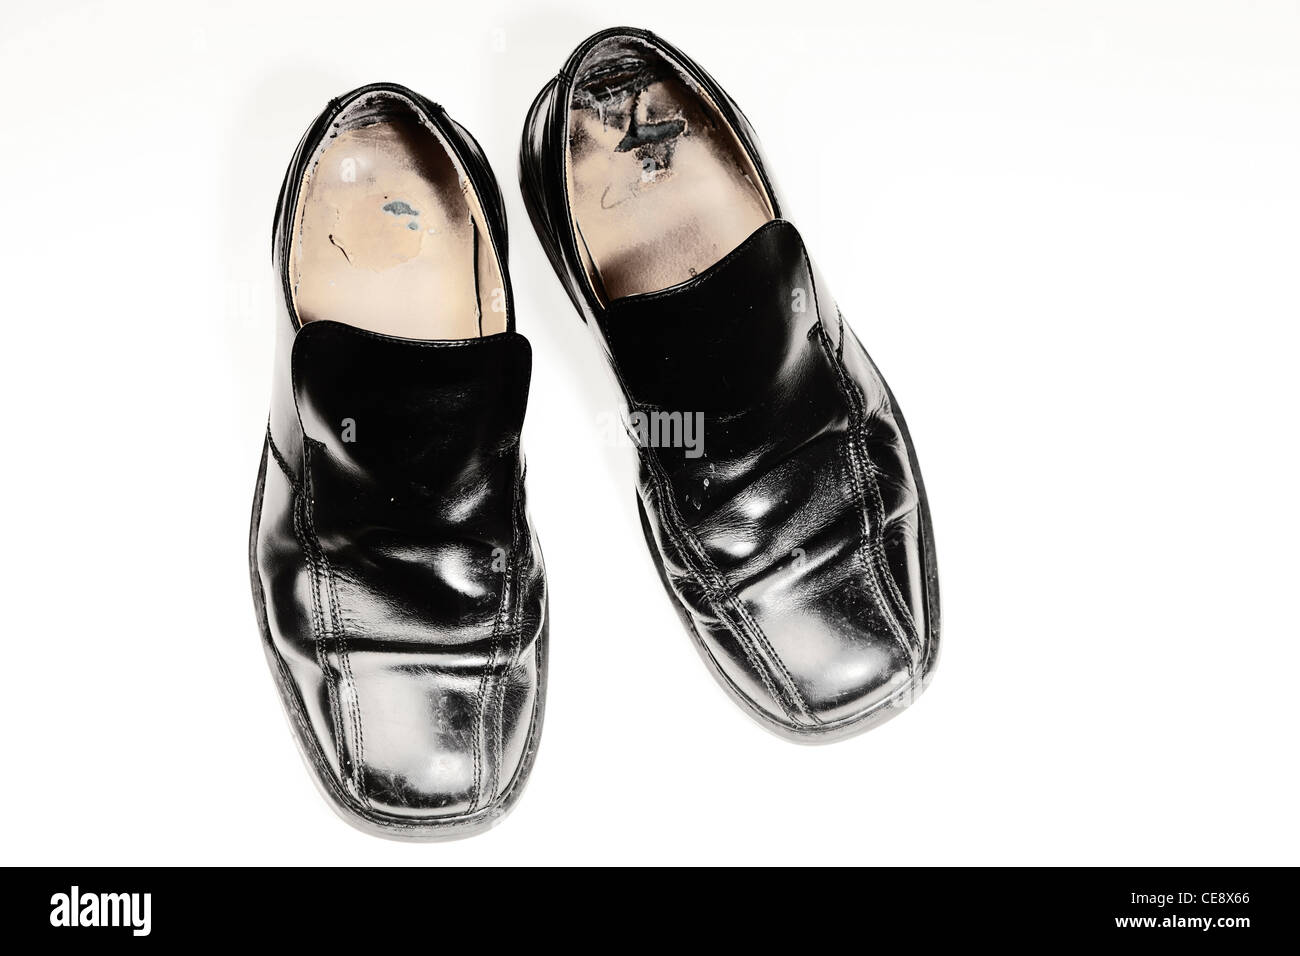 Paar alte Herren Schuhe Schwarz auf weiß fotografiert abgenutzt  Stockfotografie - Alamy